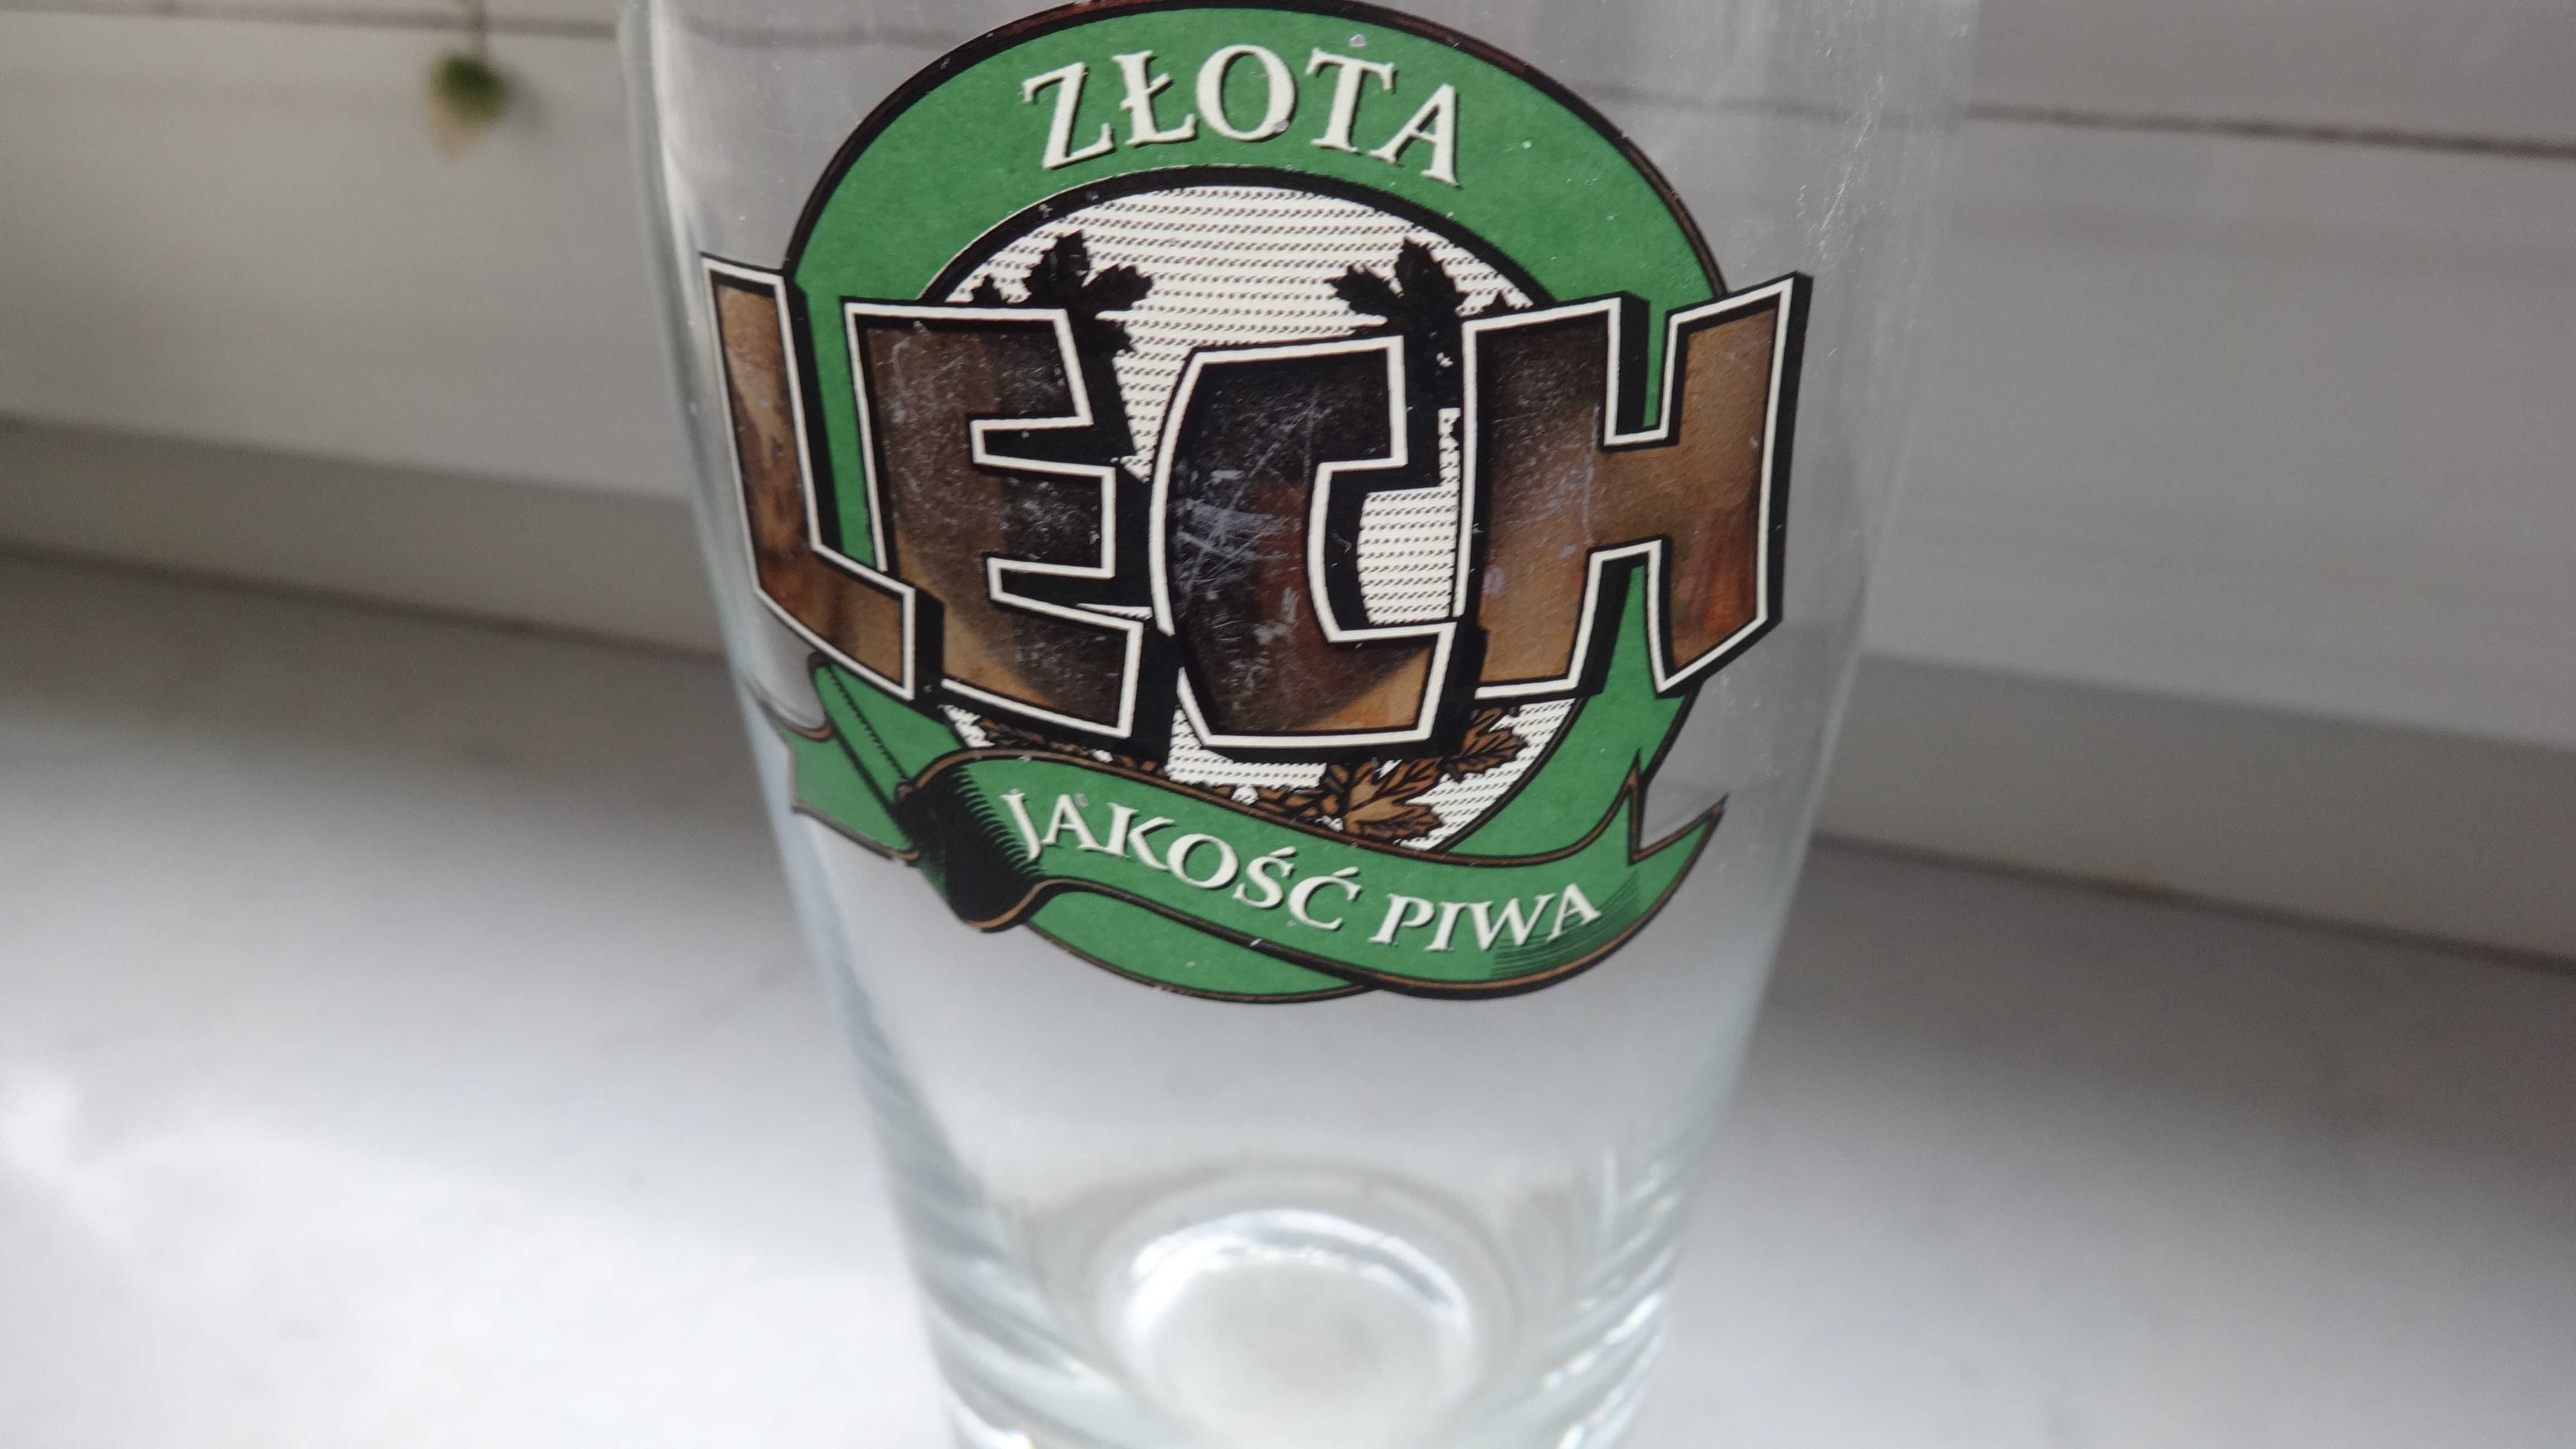 Kolekcjonerskie polskie szklanki do piwa.